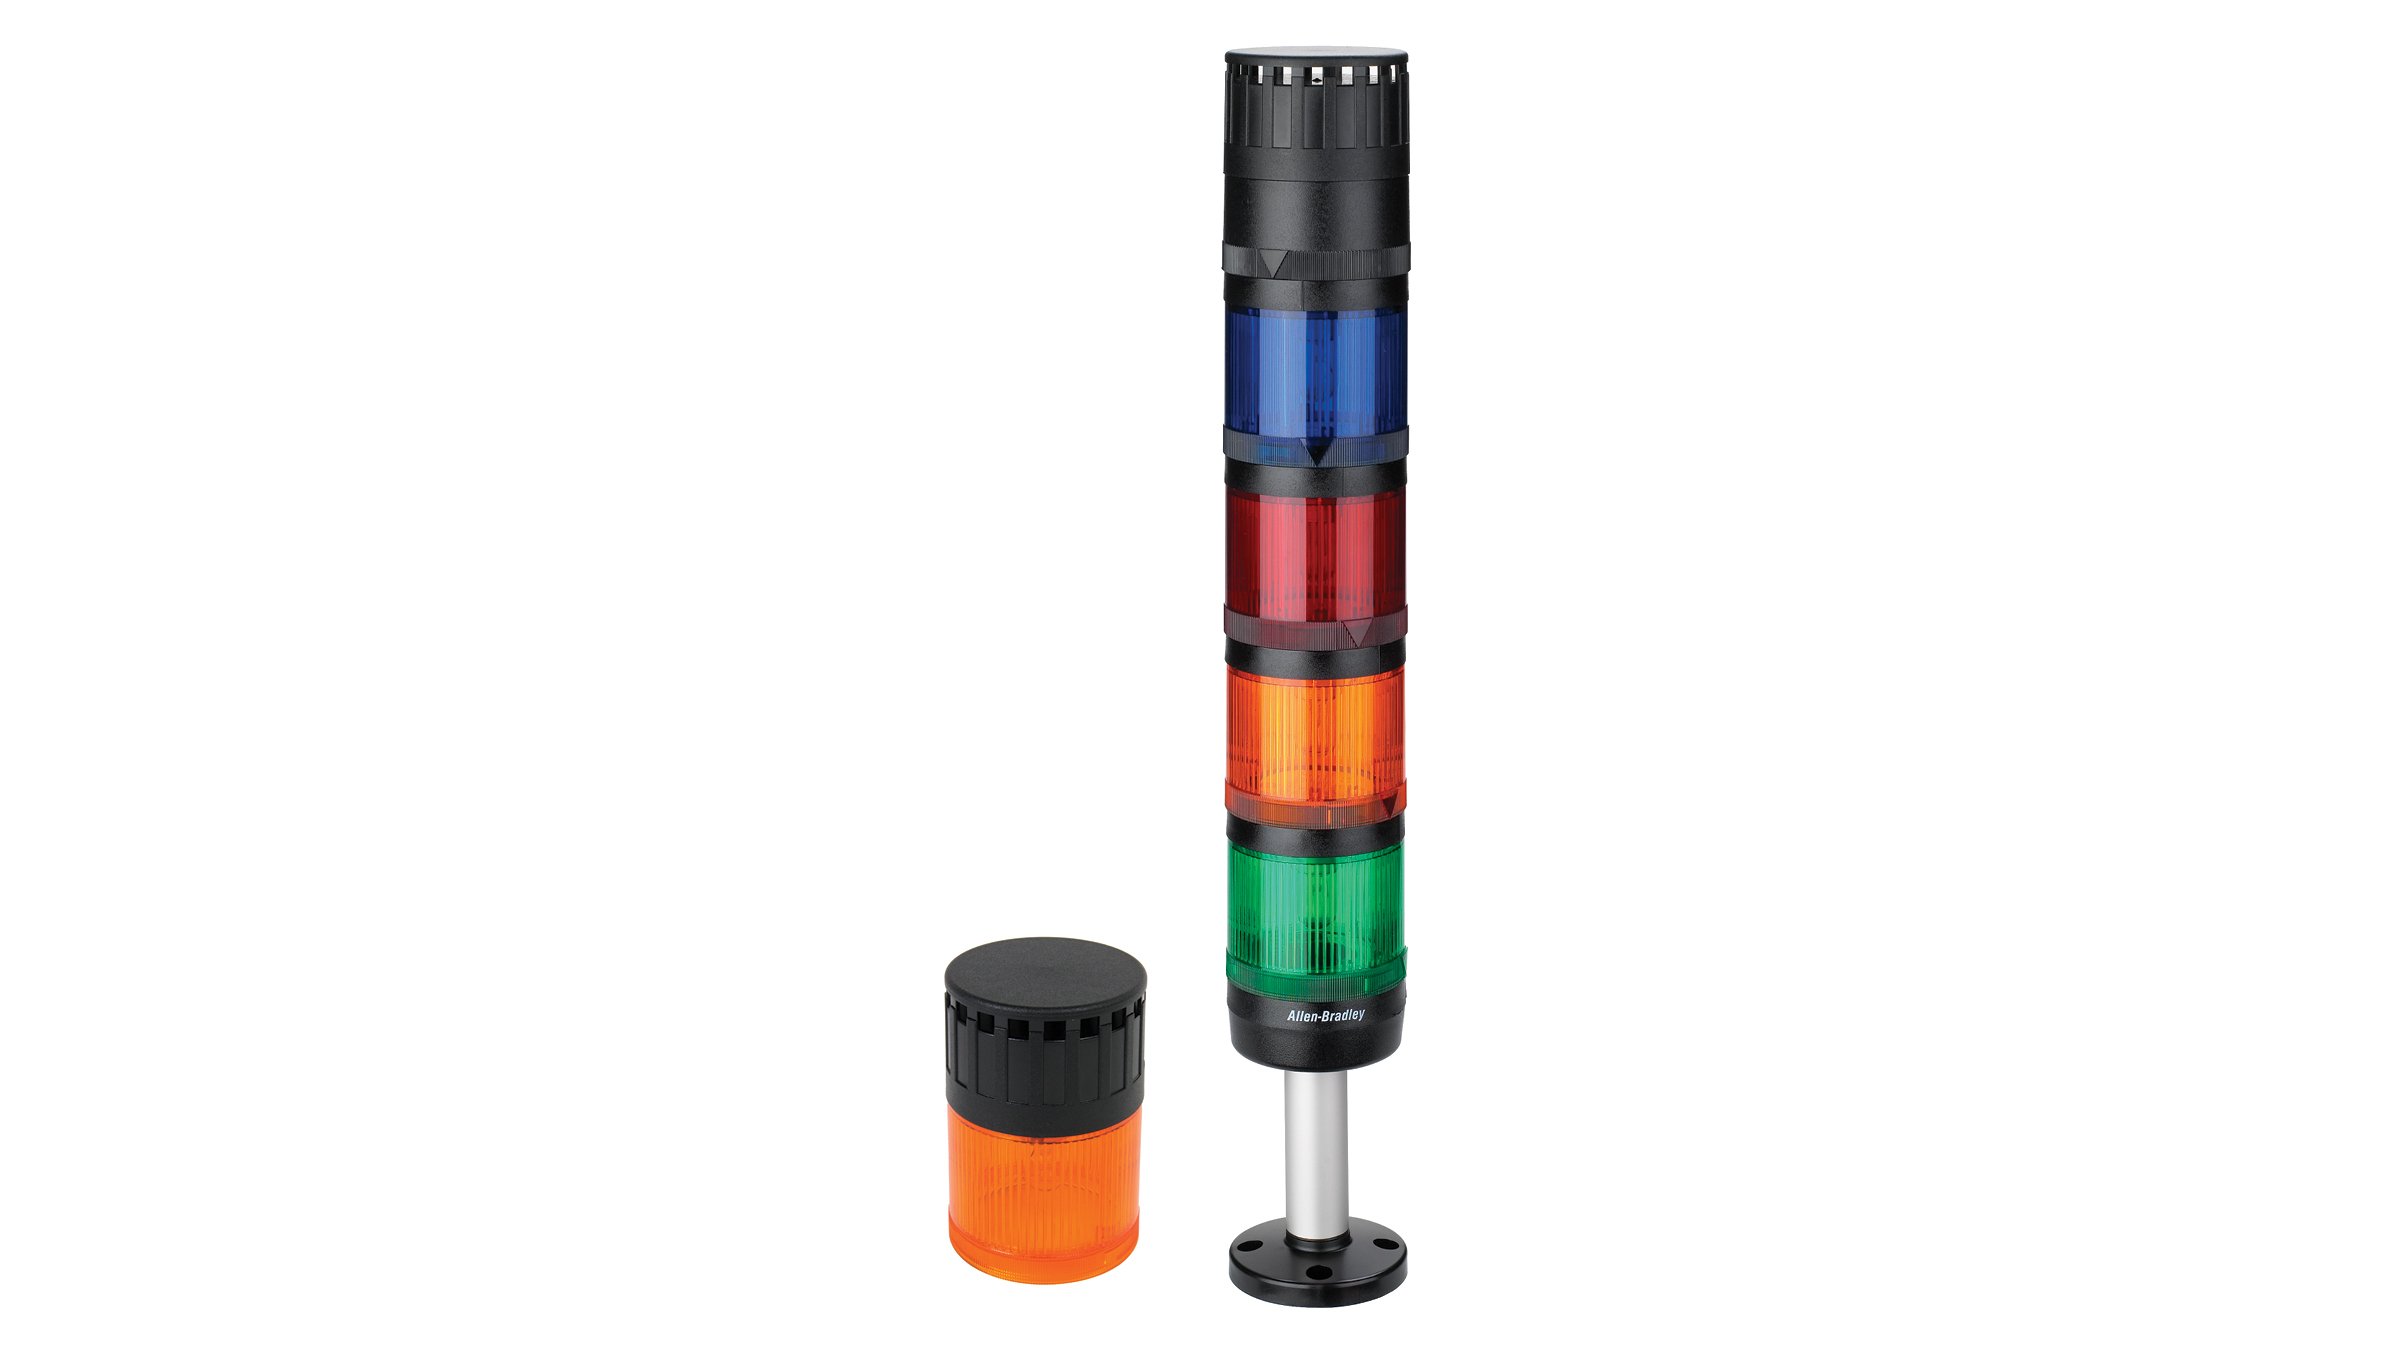 dos columnas luminosas para torre de control 855, una color naranja y una con parte superior negra, pedestal de 4 luces apiladas; verde, naranja, roja y azul con parte superior negra